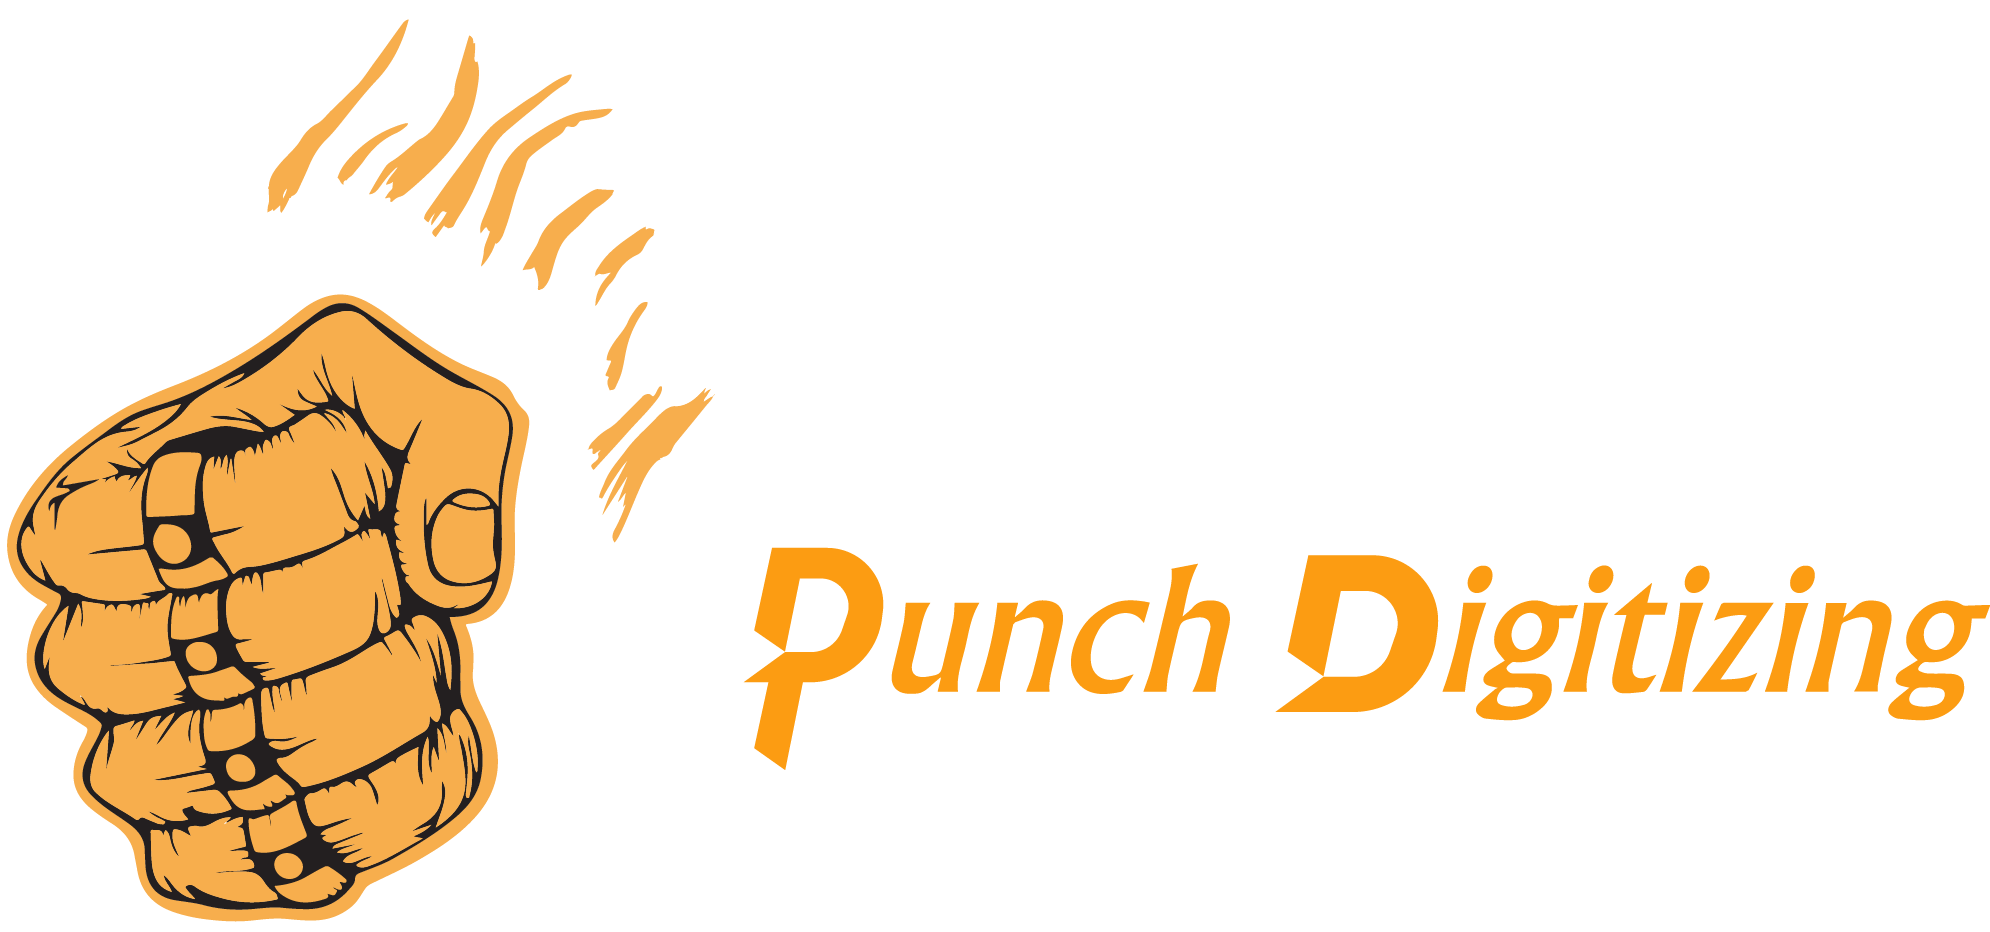 Punch Digitizing